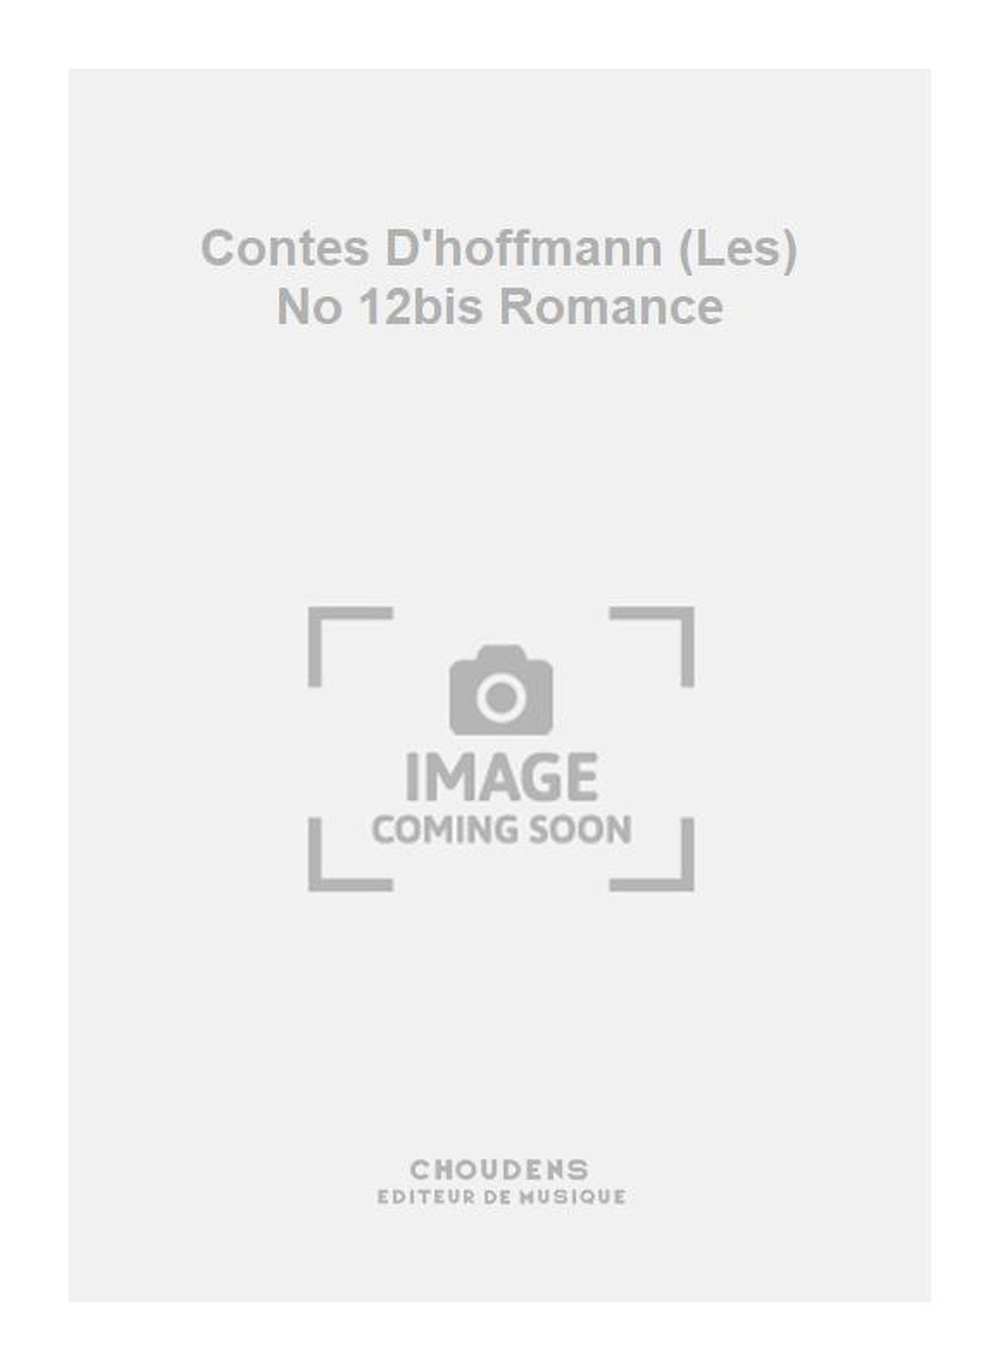 Jacques Offenbach: Contes D'hoffmann (Les) No 12bis Romance